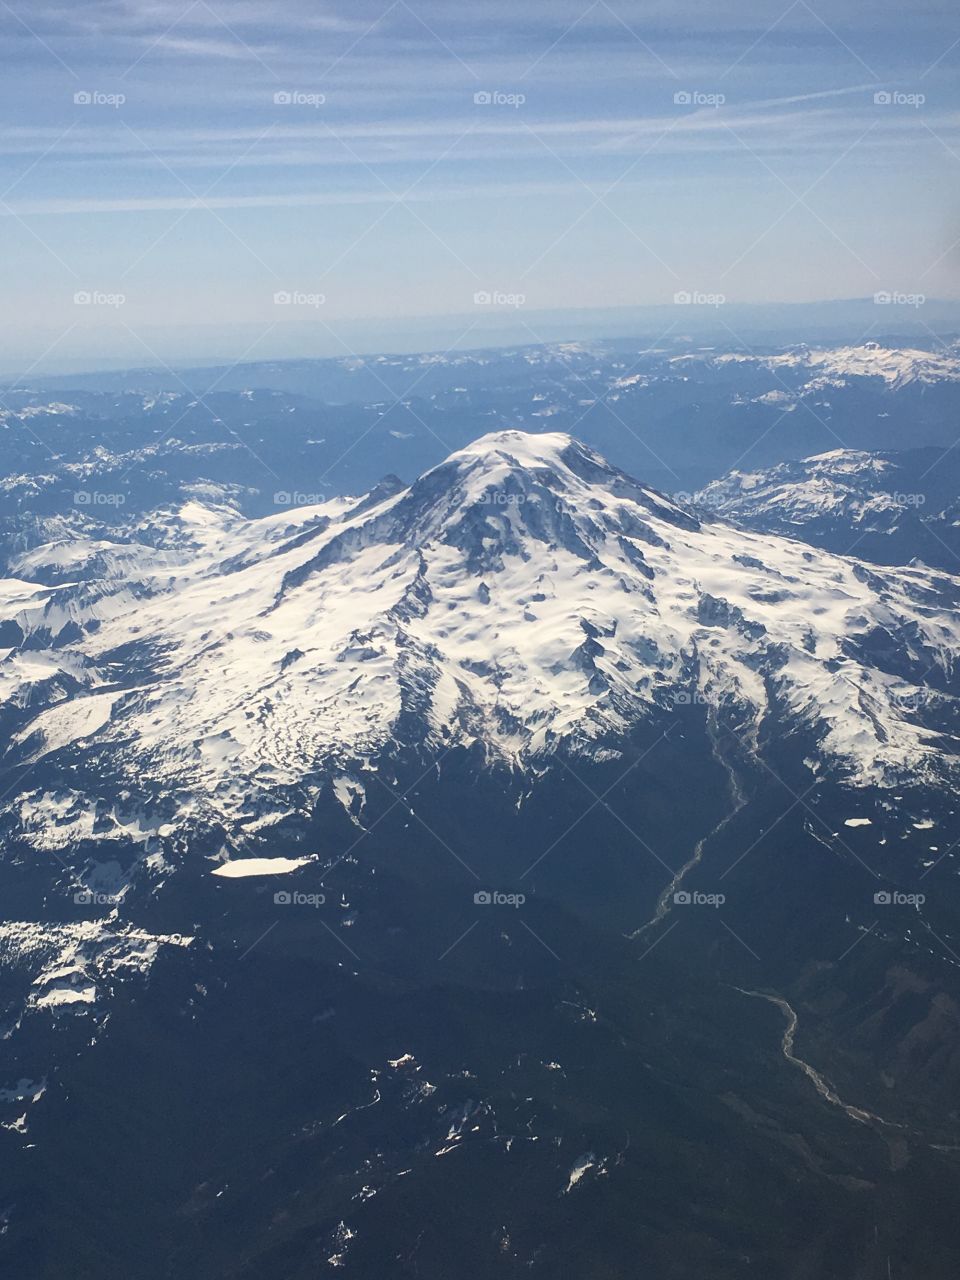 Mount Rainier with snow